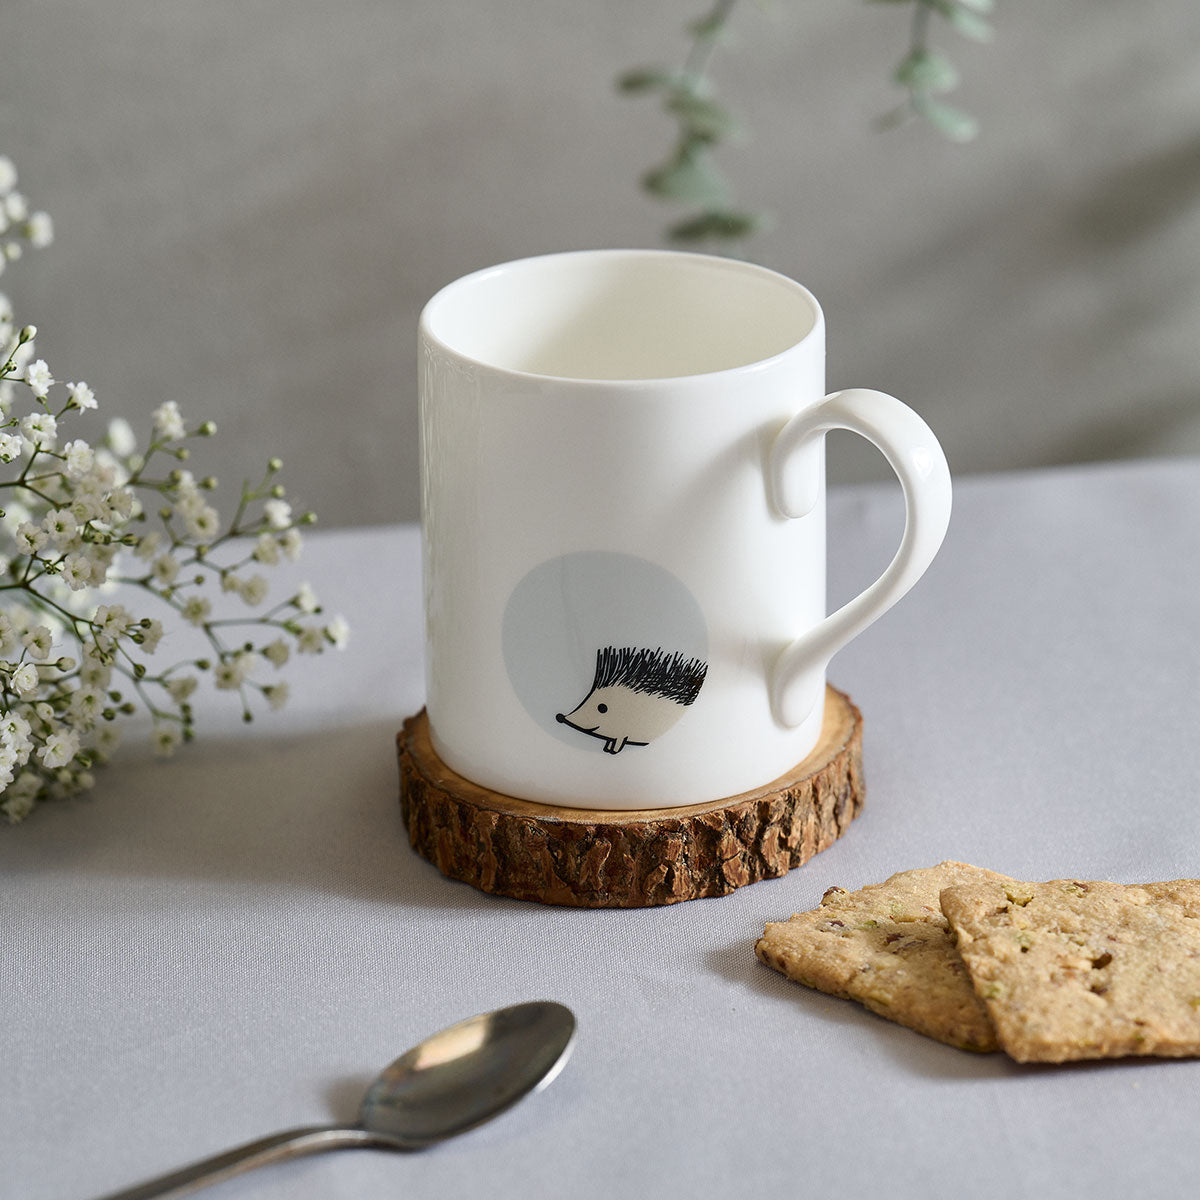 Hedgehog 2.0 Mug - Standard Size - with biscuits